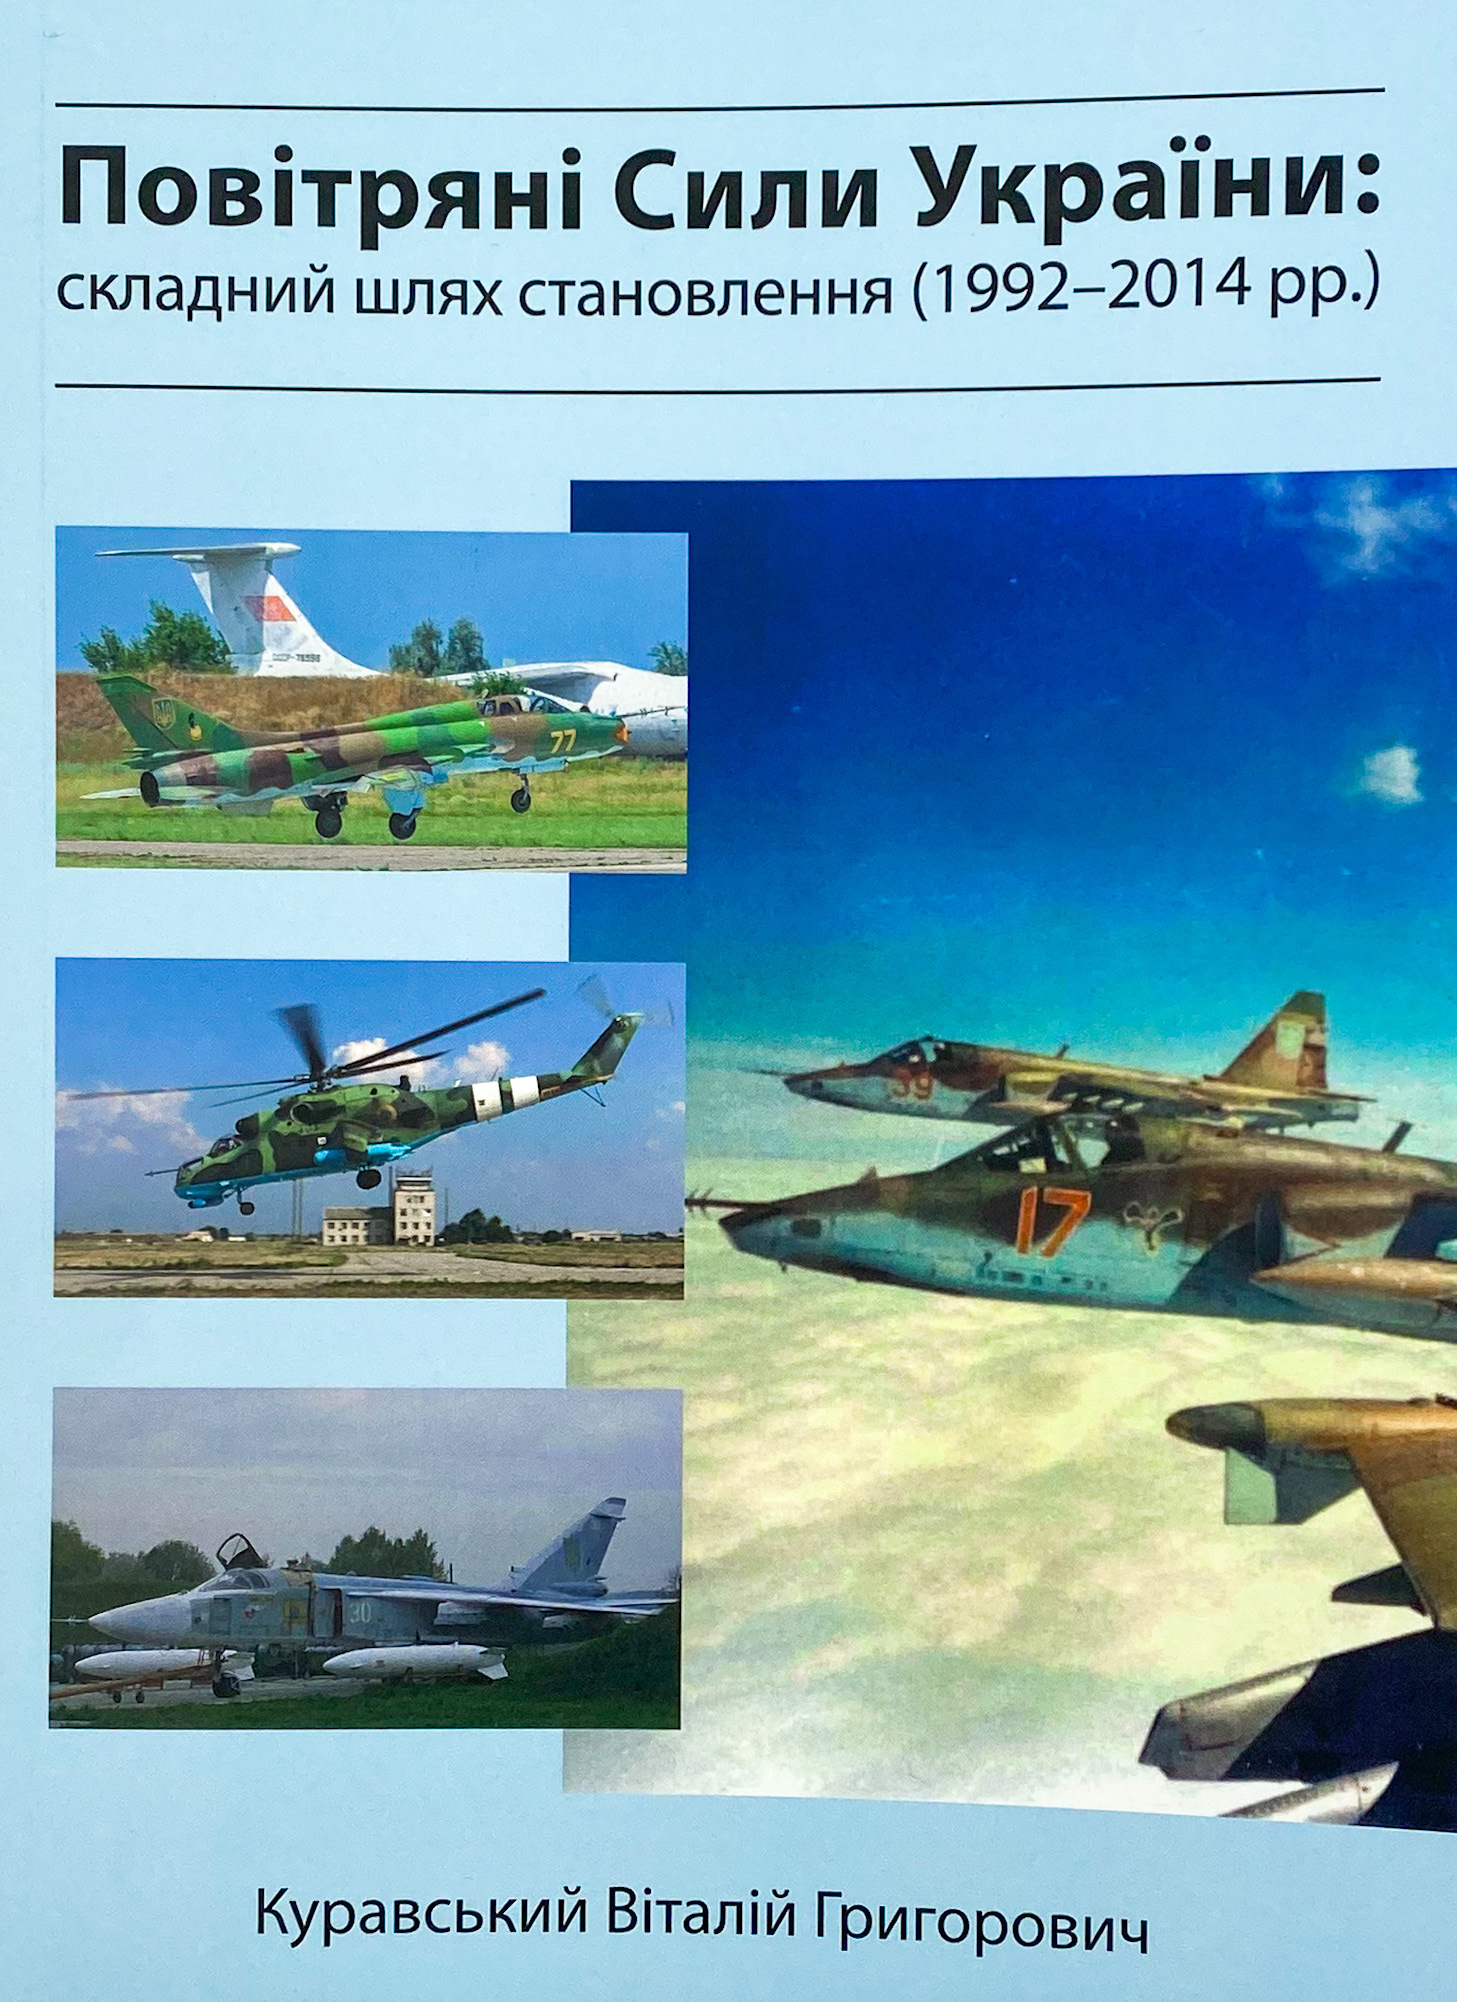 Повітряні сили України. Складний шлях становлення (1992-2014 роки)